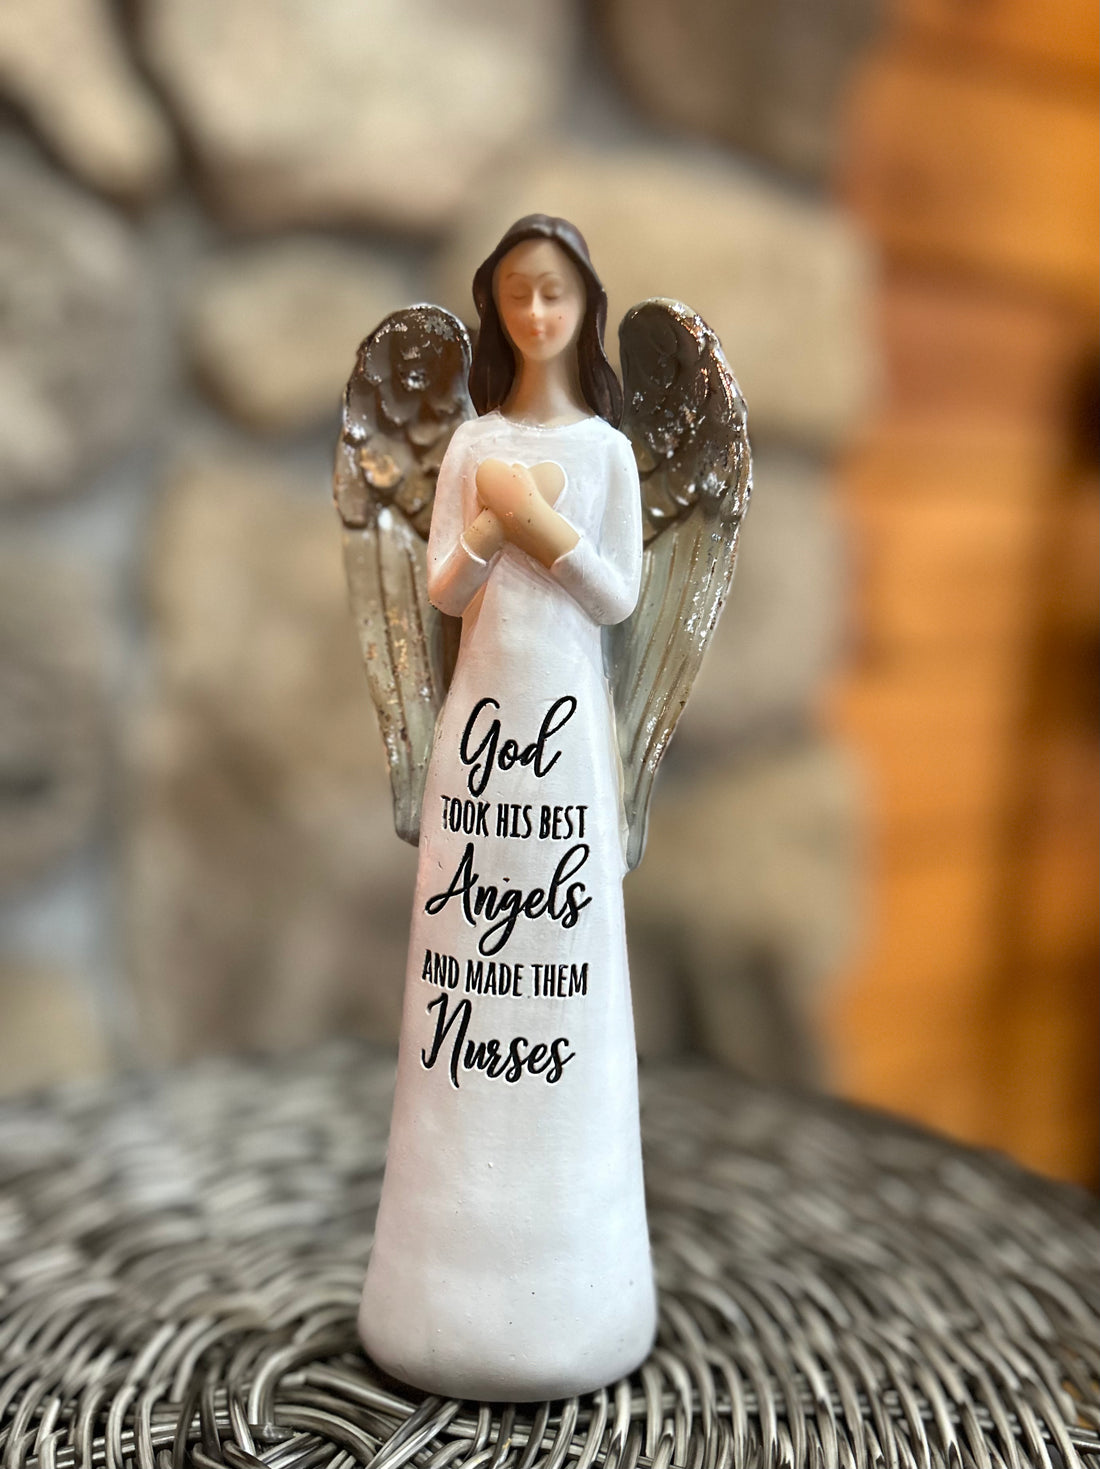 Angel Nurse ~ God Took His Best Angels and Made them Nurses